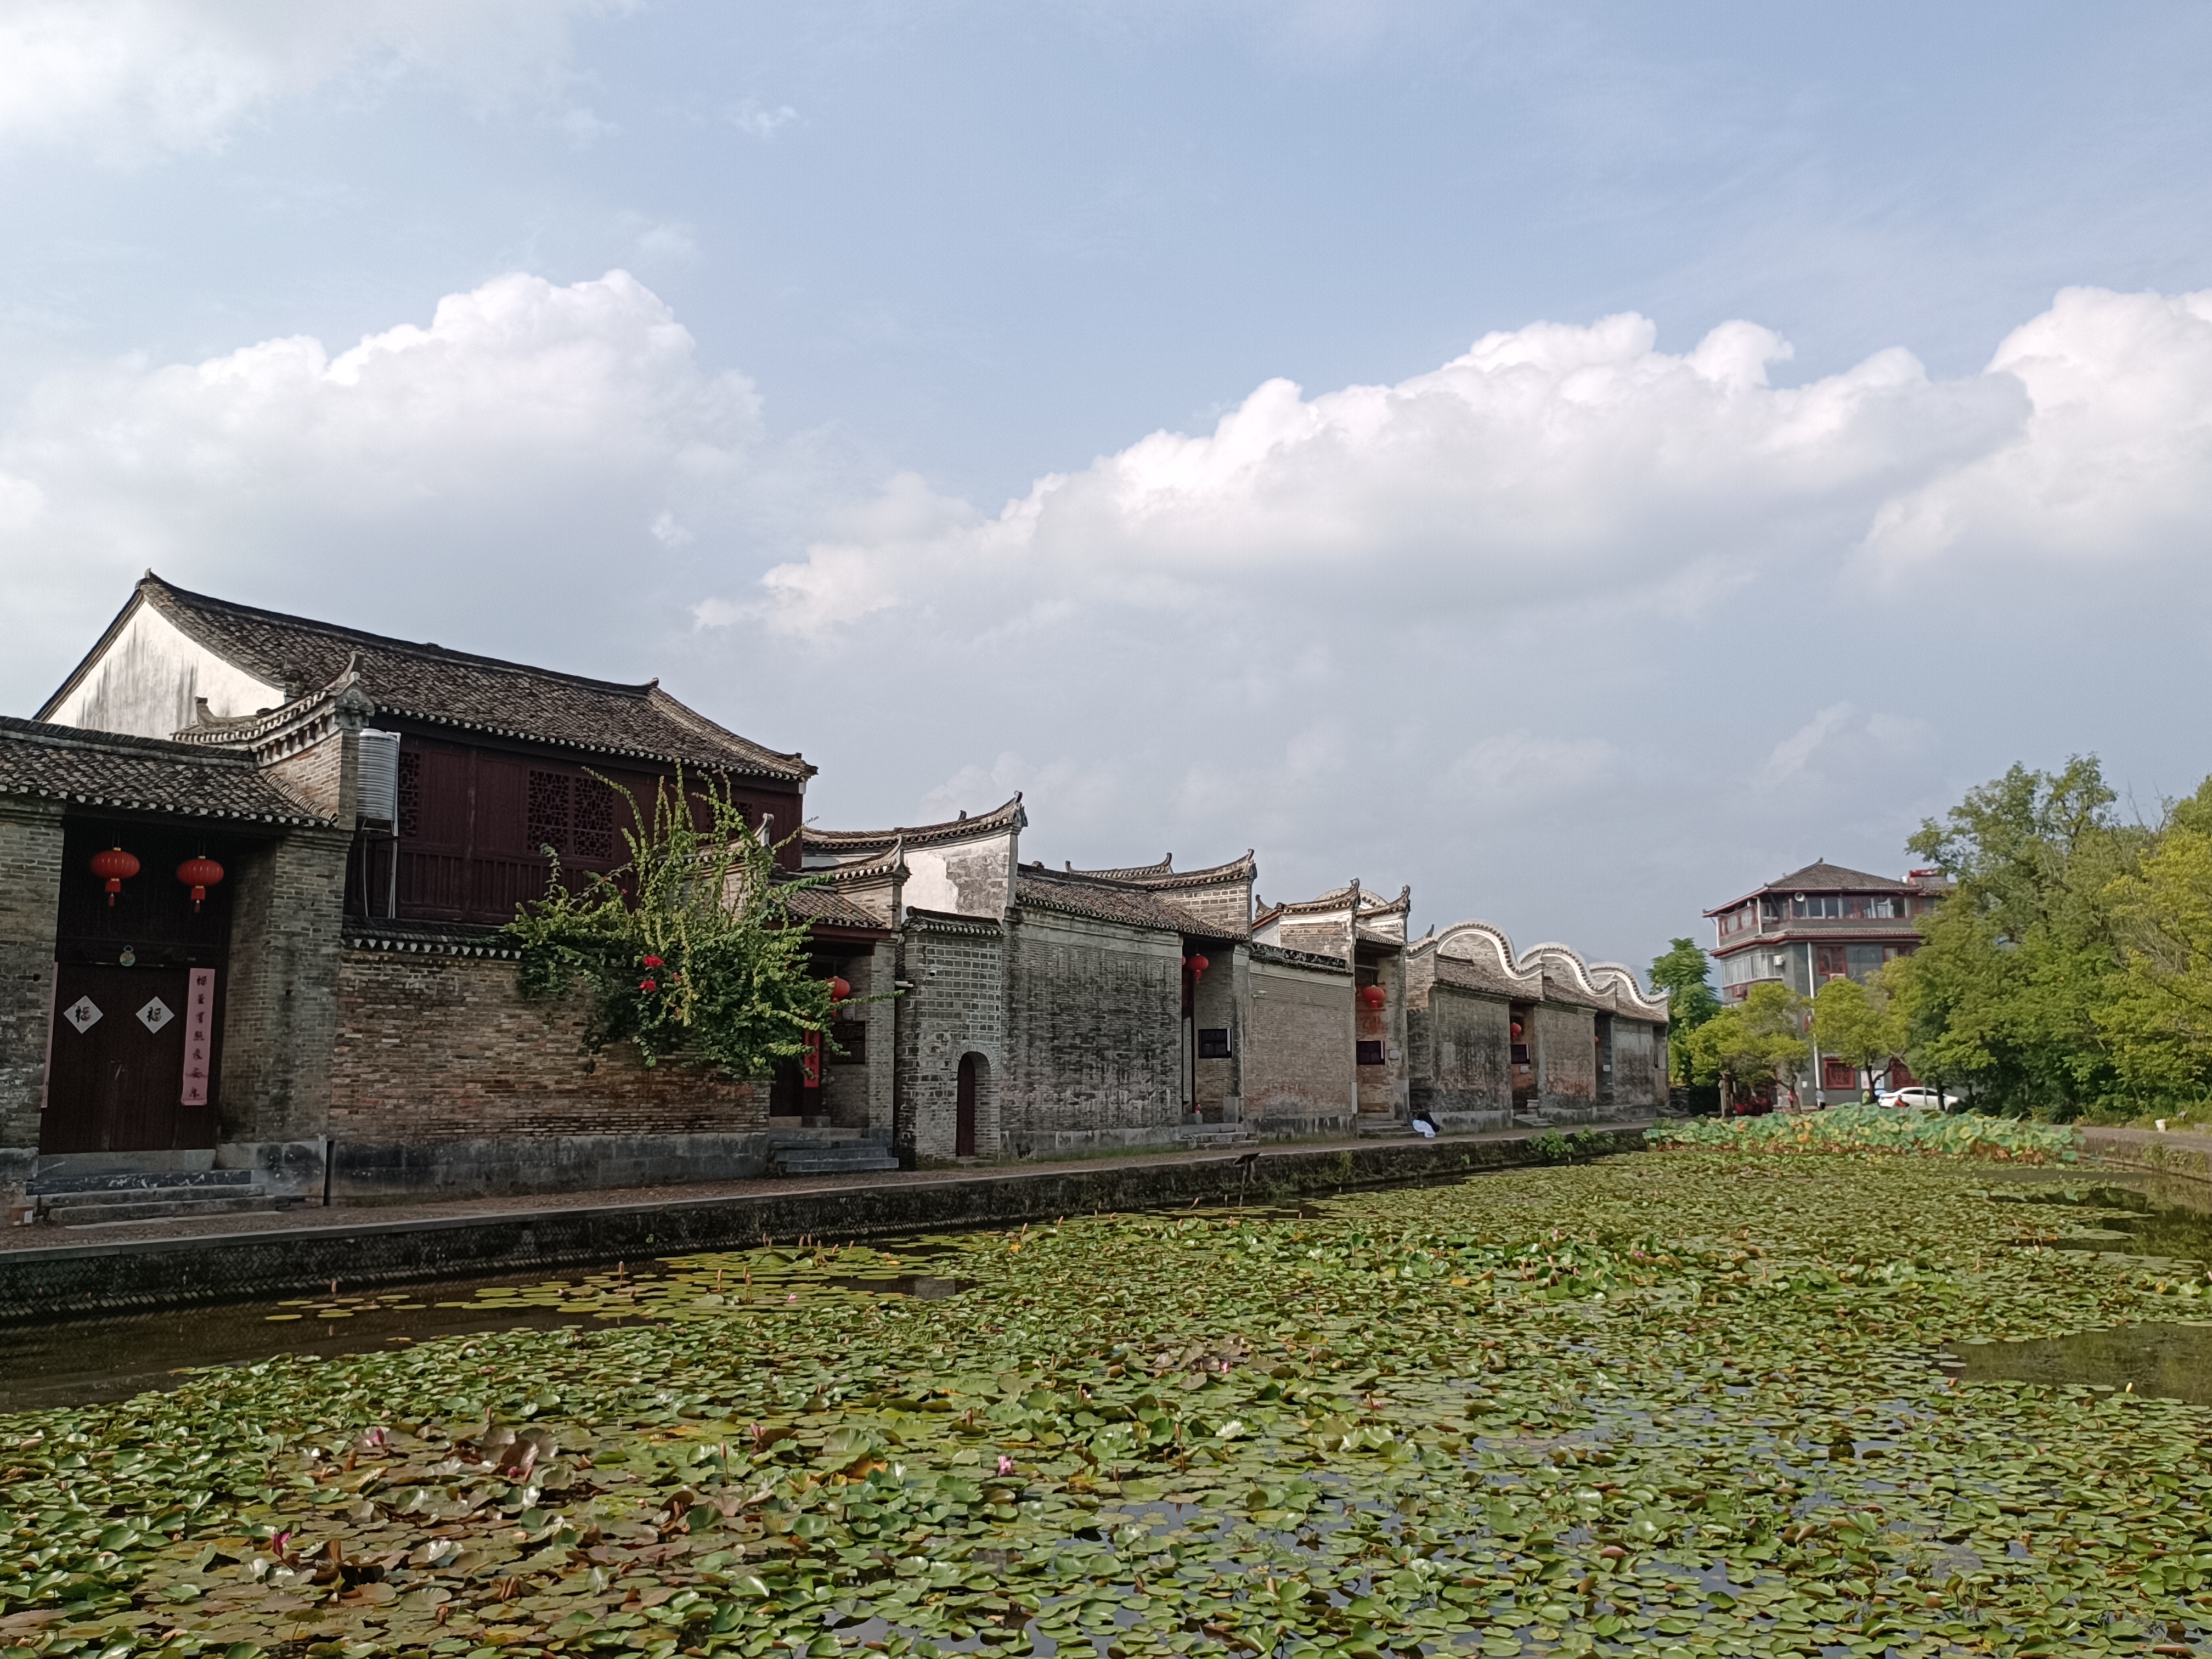 桂林市灵川江头村,踏入这幅画面,仿佛穿越时空,回到了古代的中国